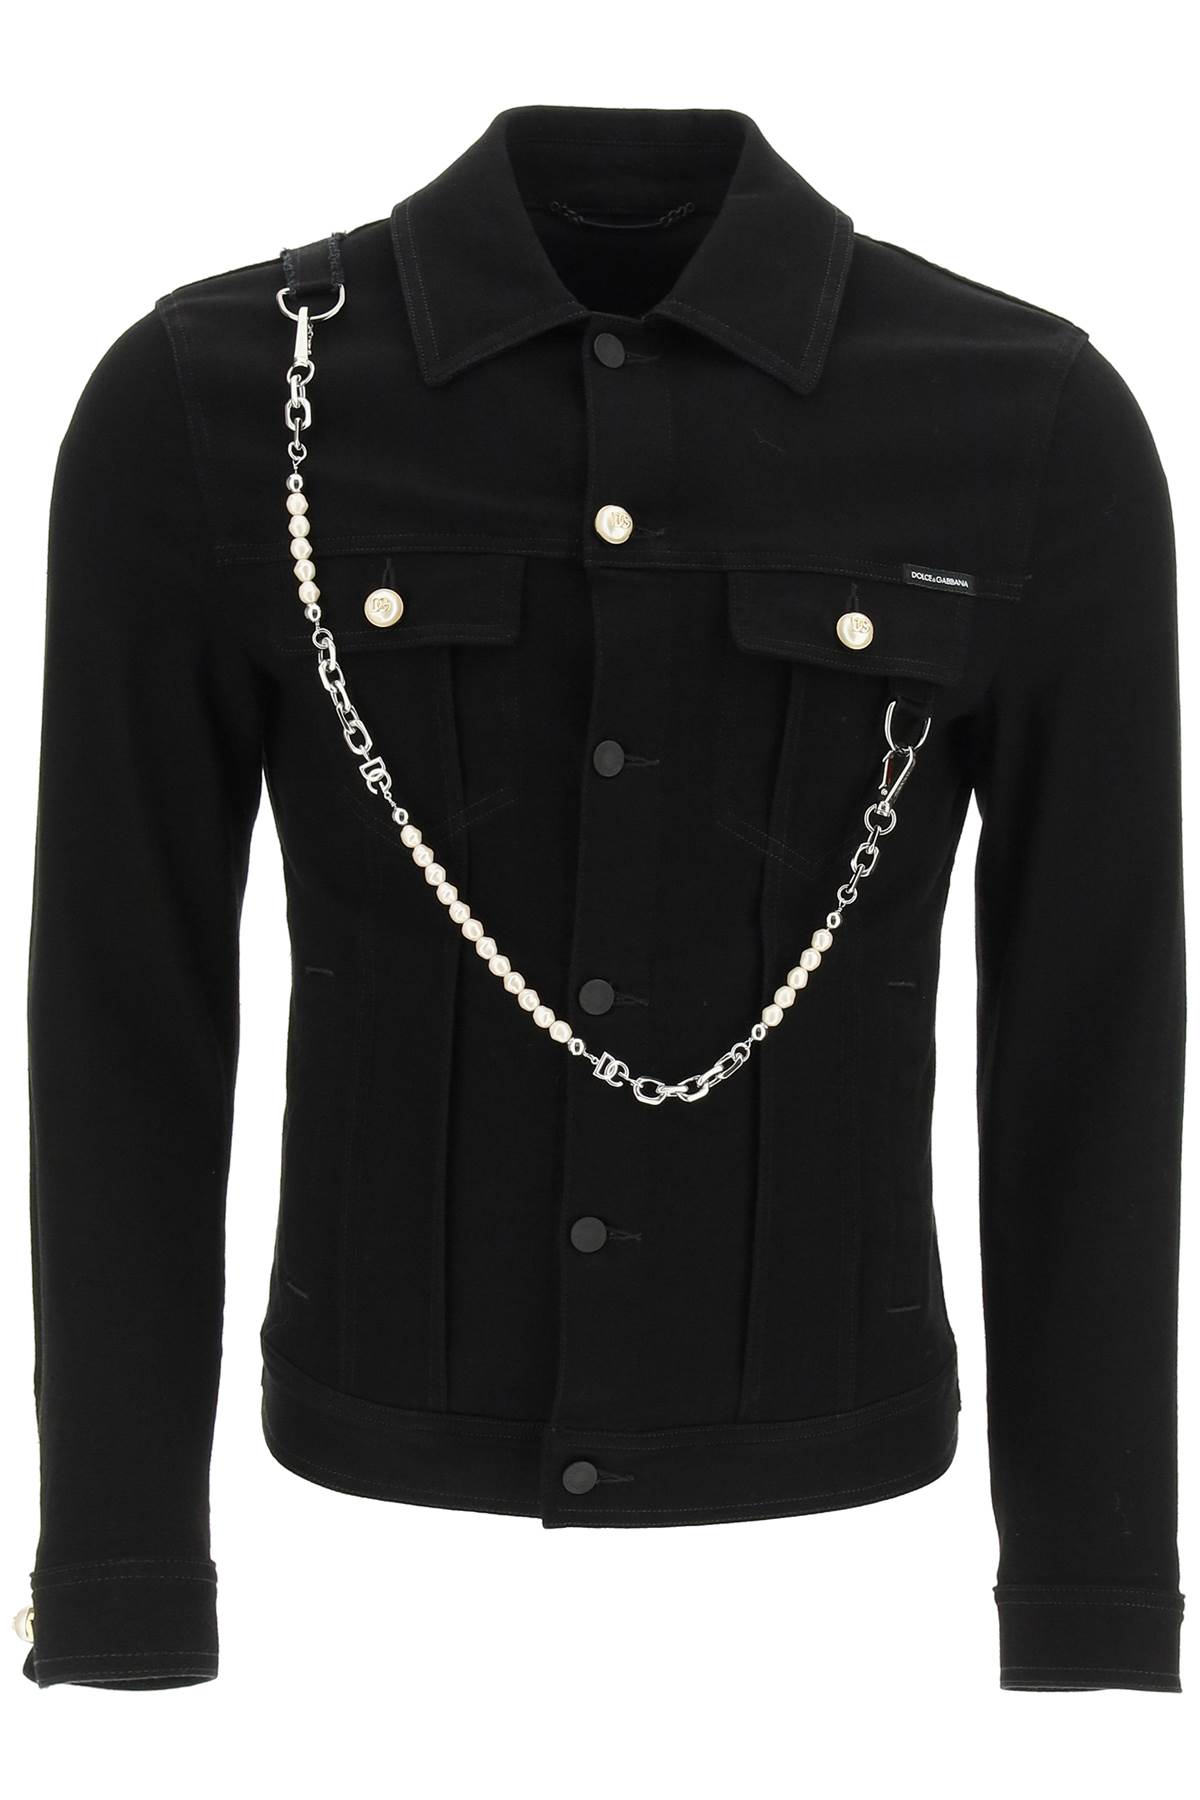 Dolce & Gabbana Denim Jacket With Keychain